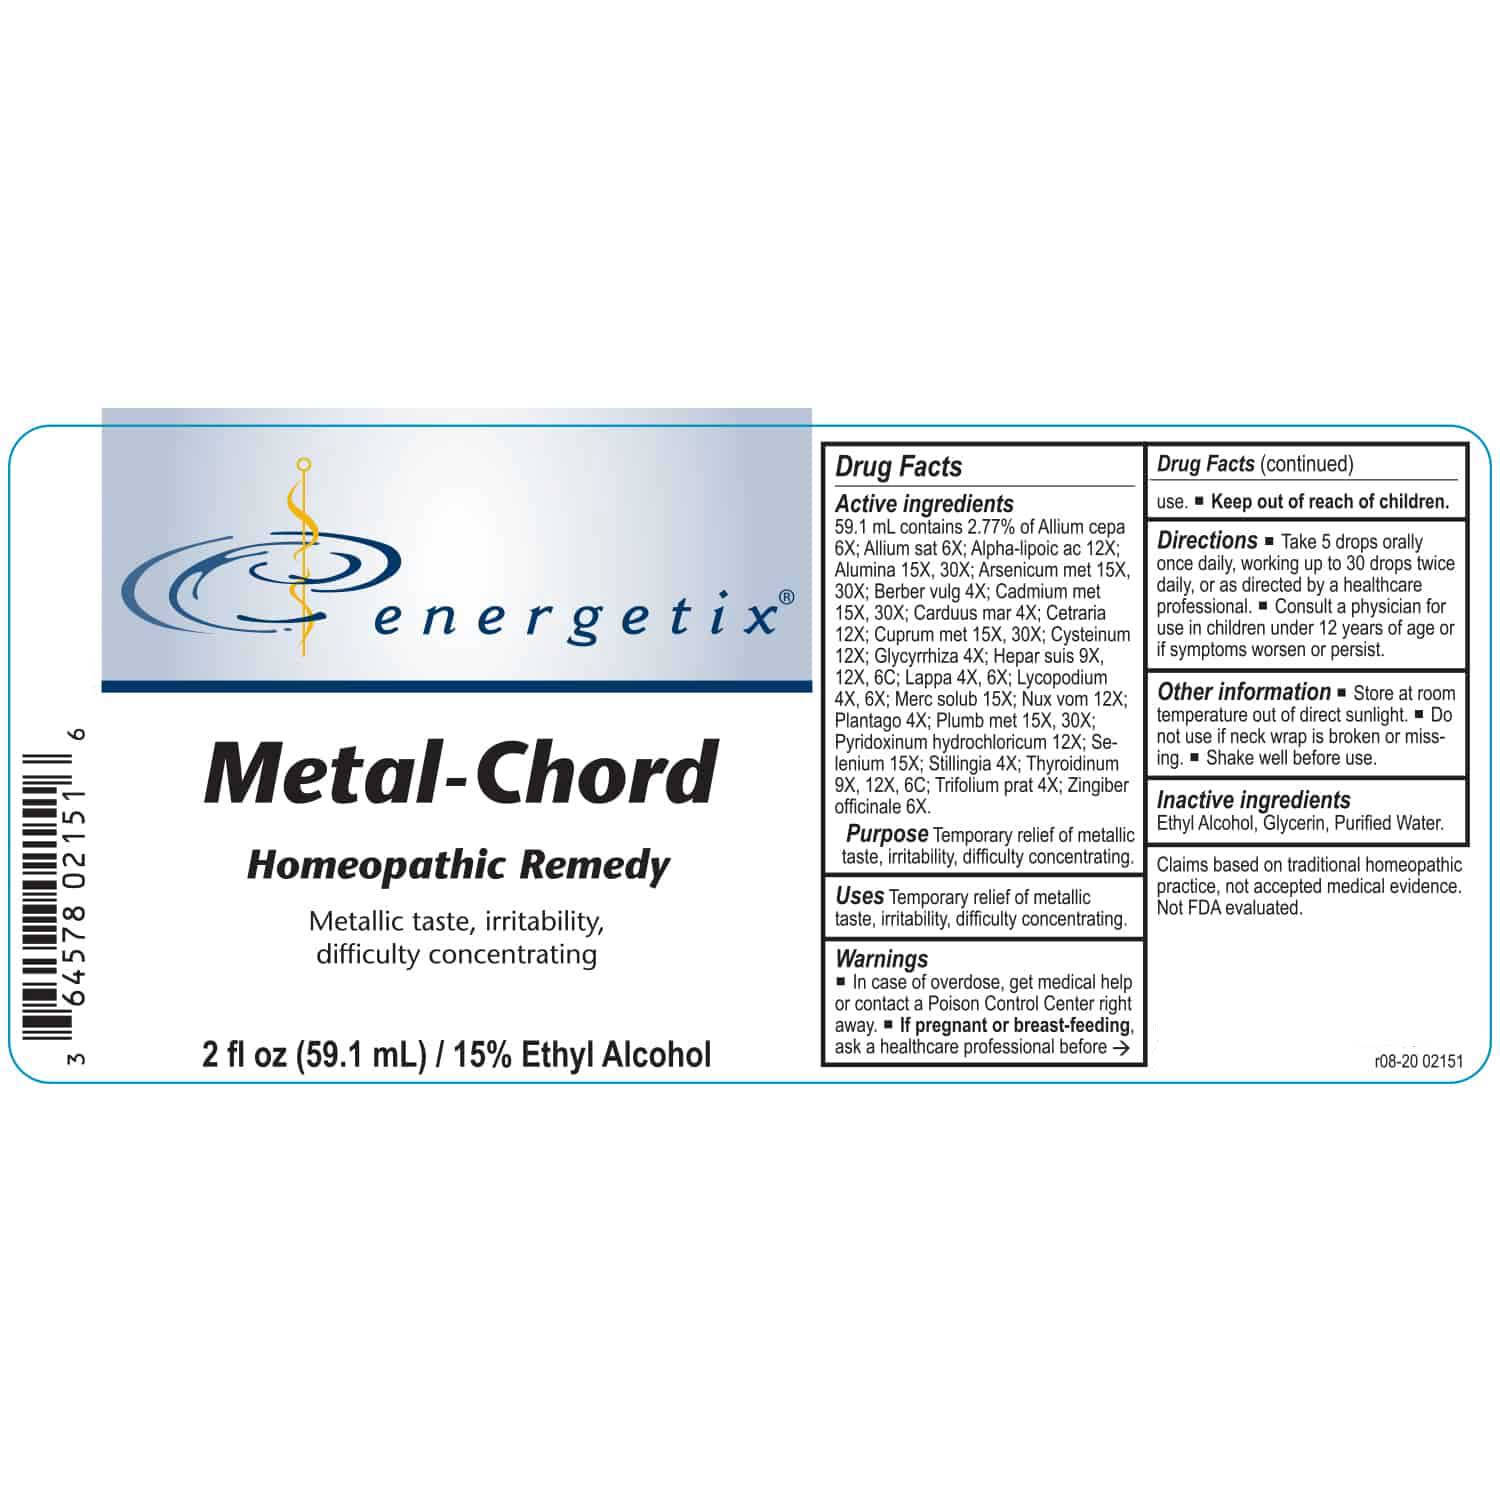 Energetix Metal-Chord Label